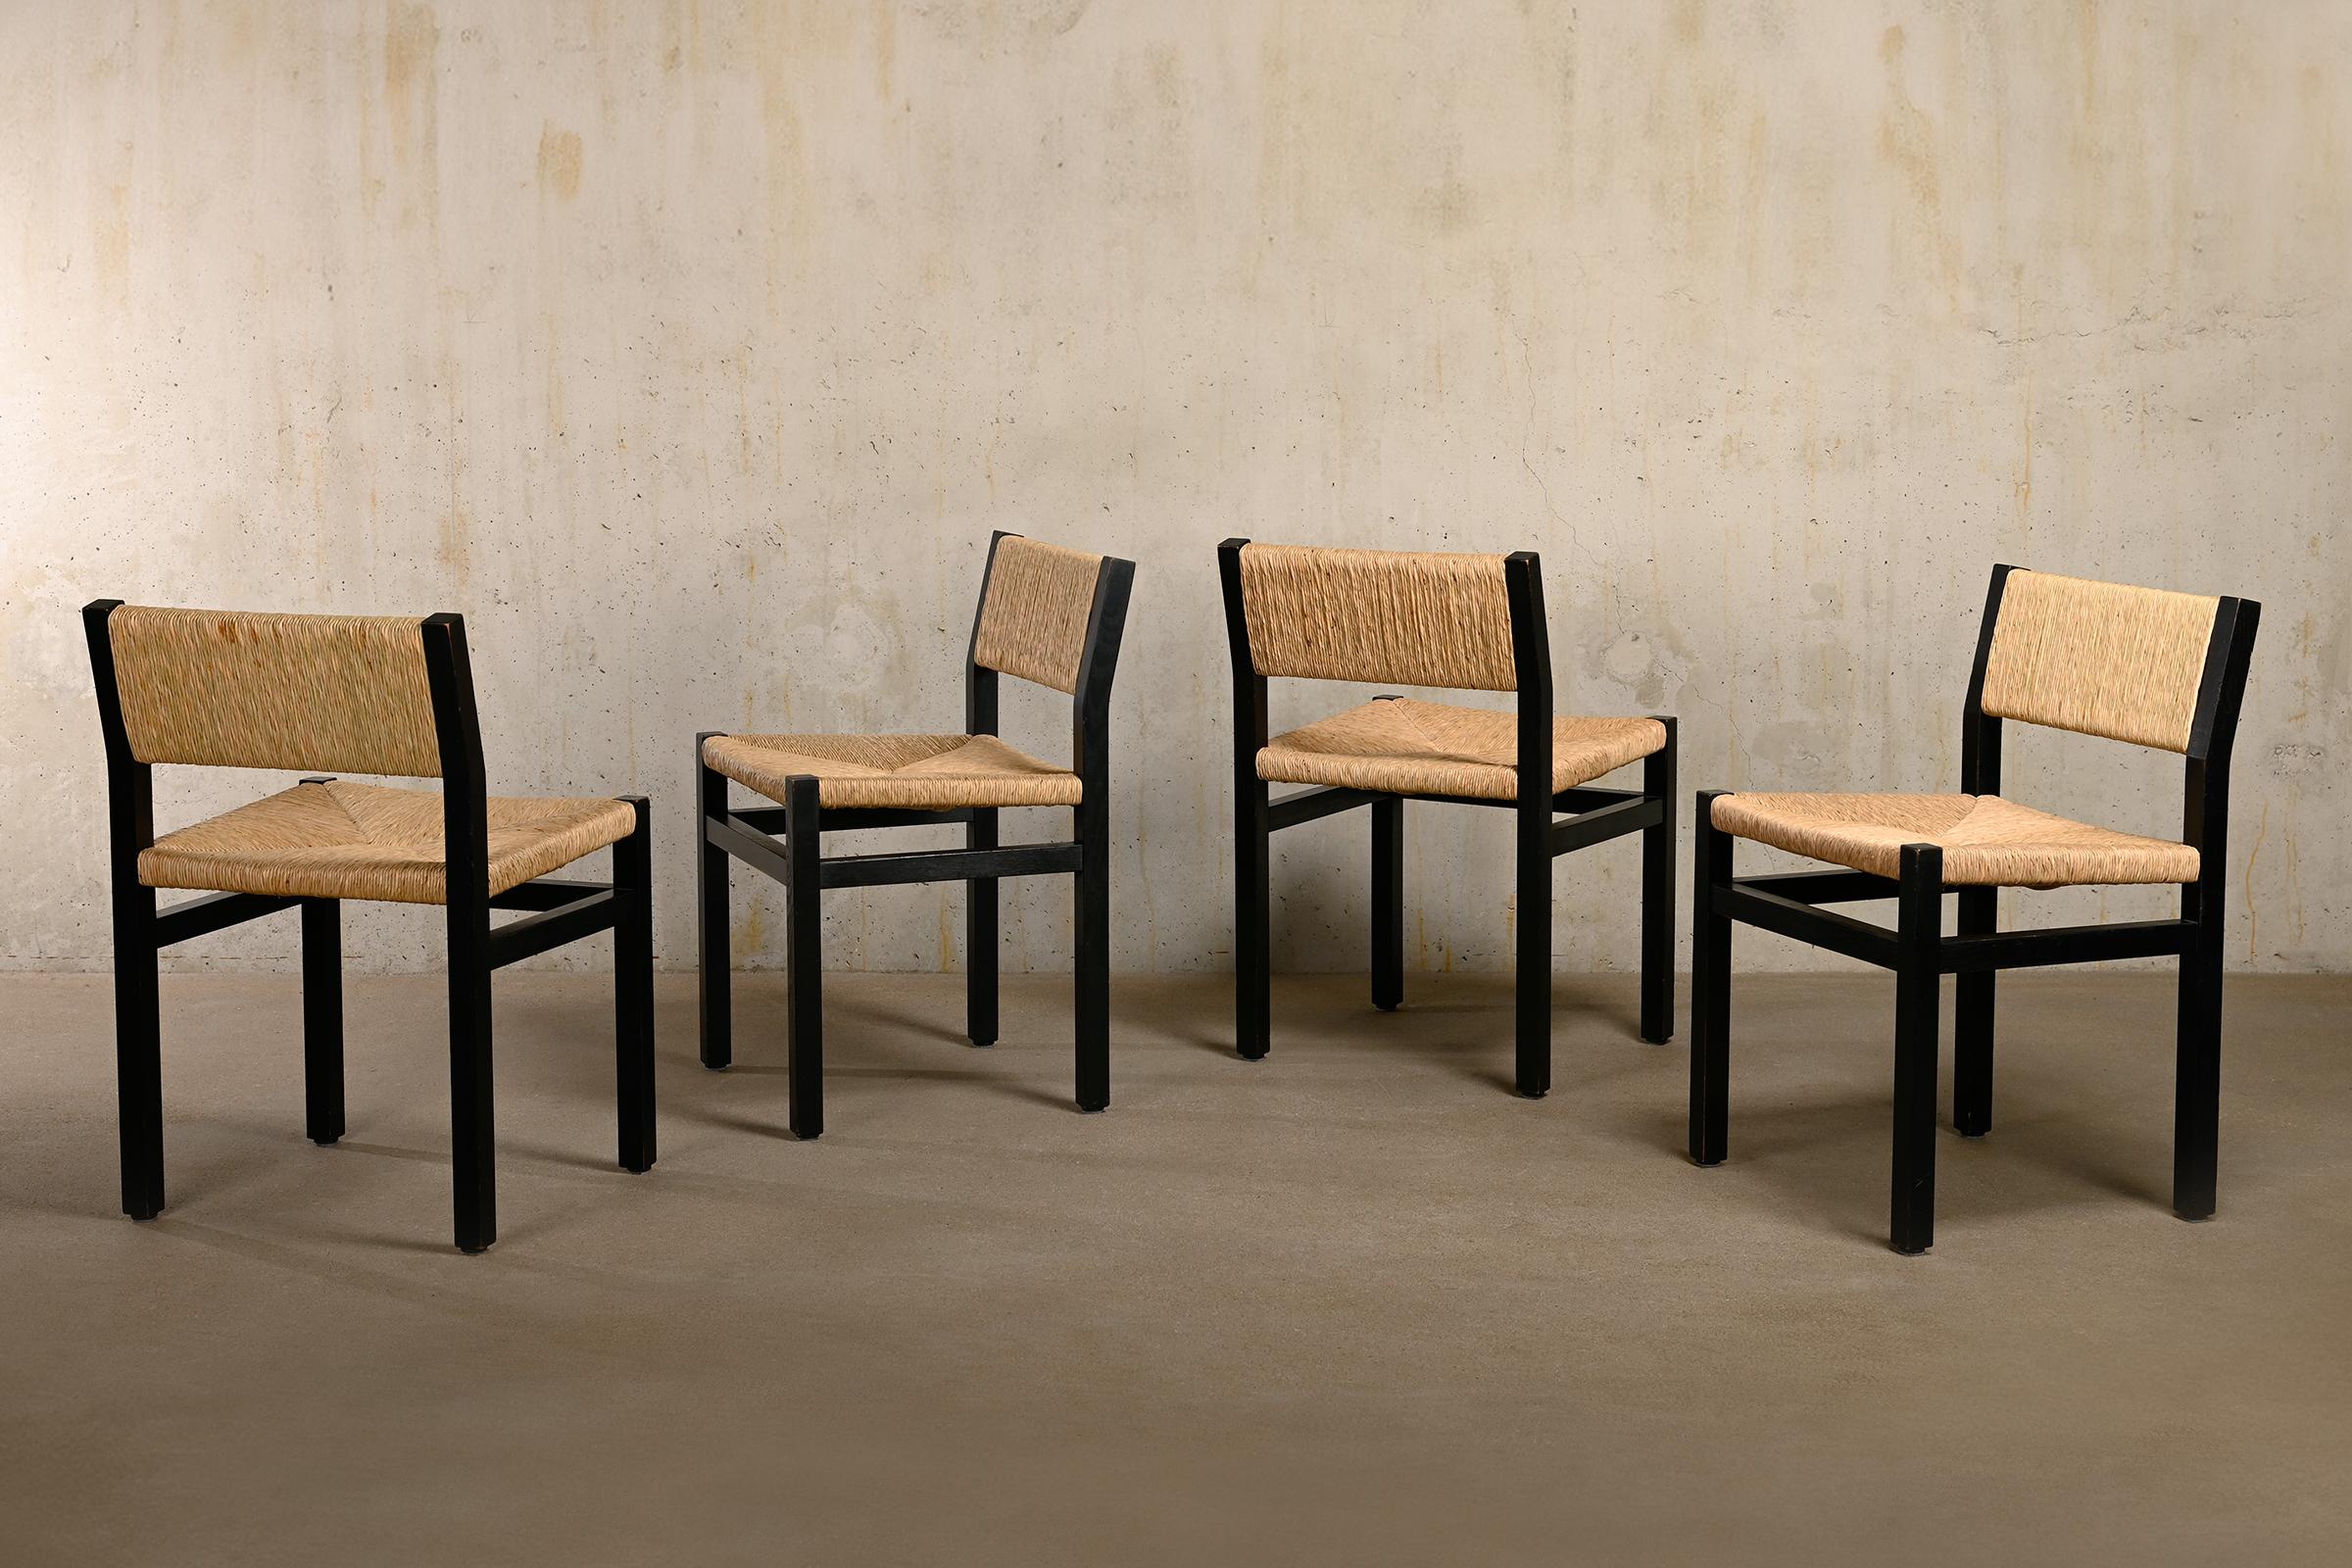 Schöner Satz von 4 Esszimmerstühlen (Modell SE82), entworfen von Martin Visser für 't Spectrum, Niederlande 1970er Jahre. Schwarz lackierte Eschenholzrahmen mit handgeflochtenen Sitzflächen und Rückenlehnen aus Binsen. Das Design zeichnet sich durch